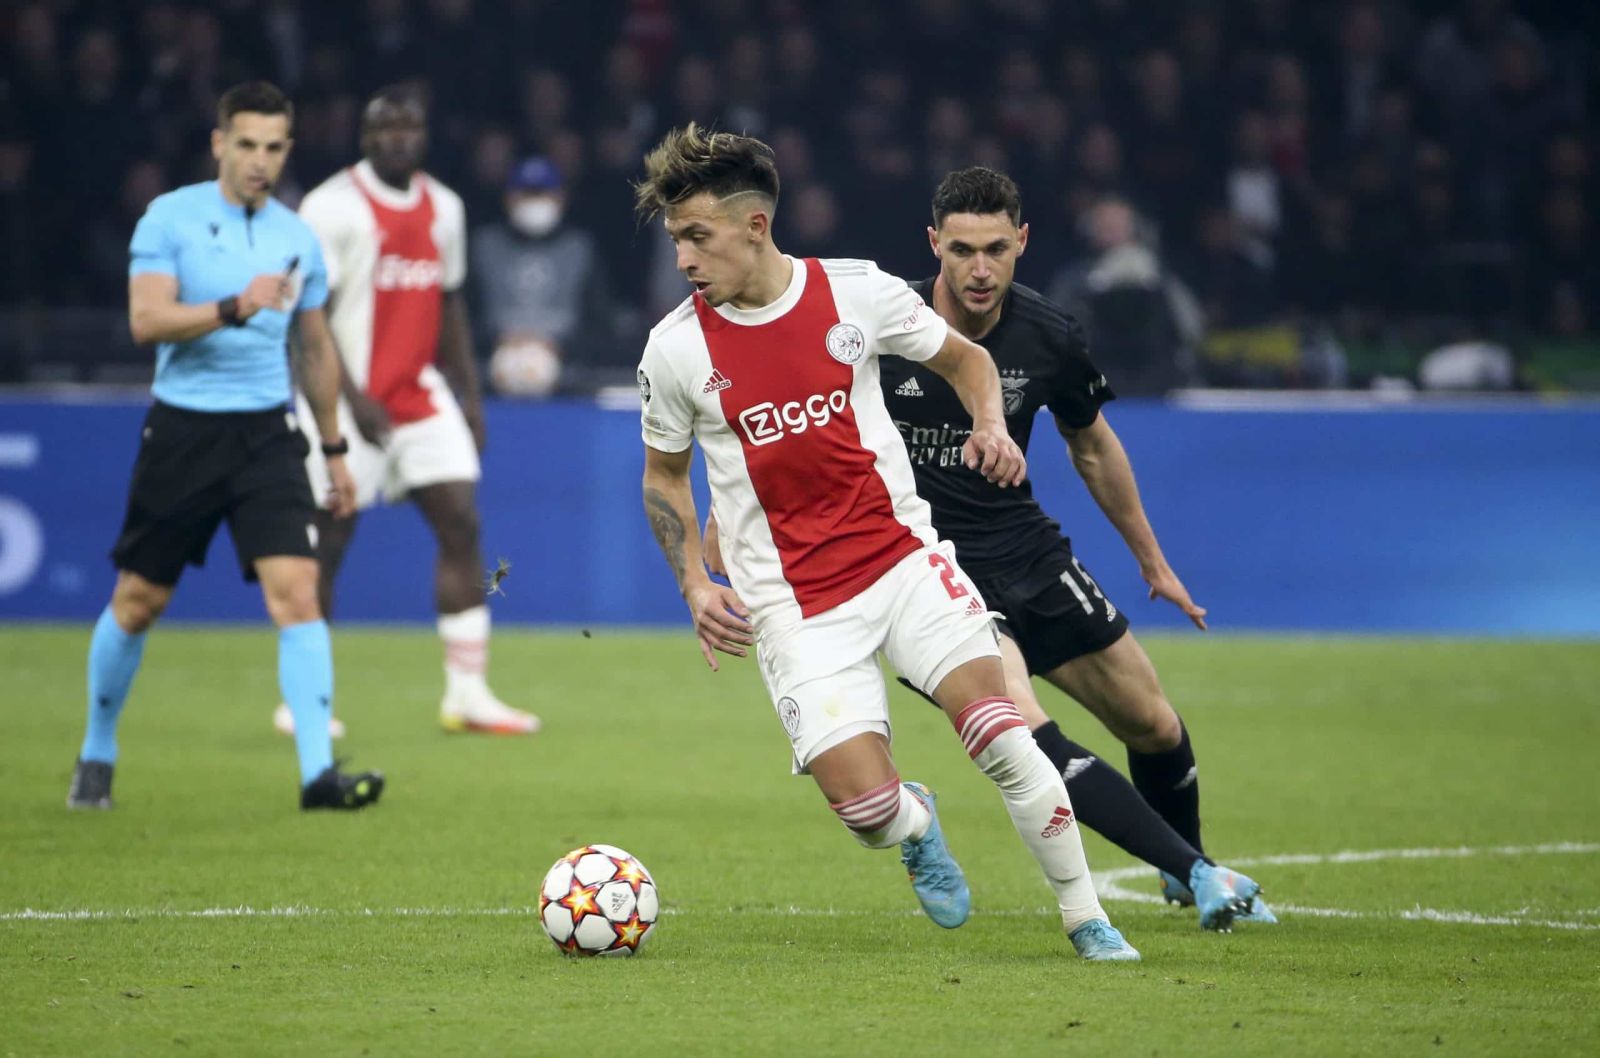 Martinez đã có 5 năm phát triển vượt bậc trong màu áo của Ajax